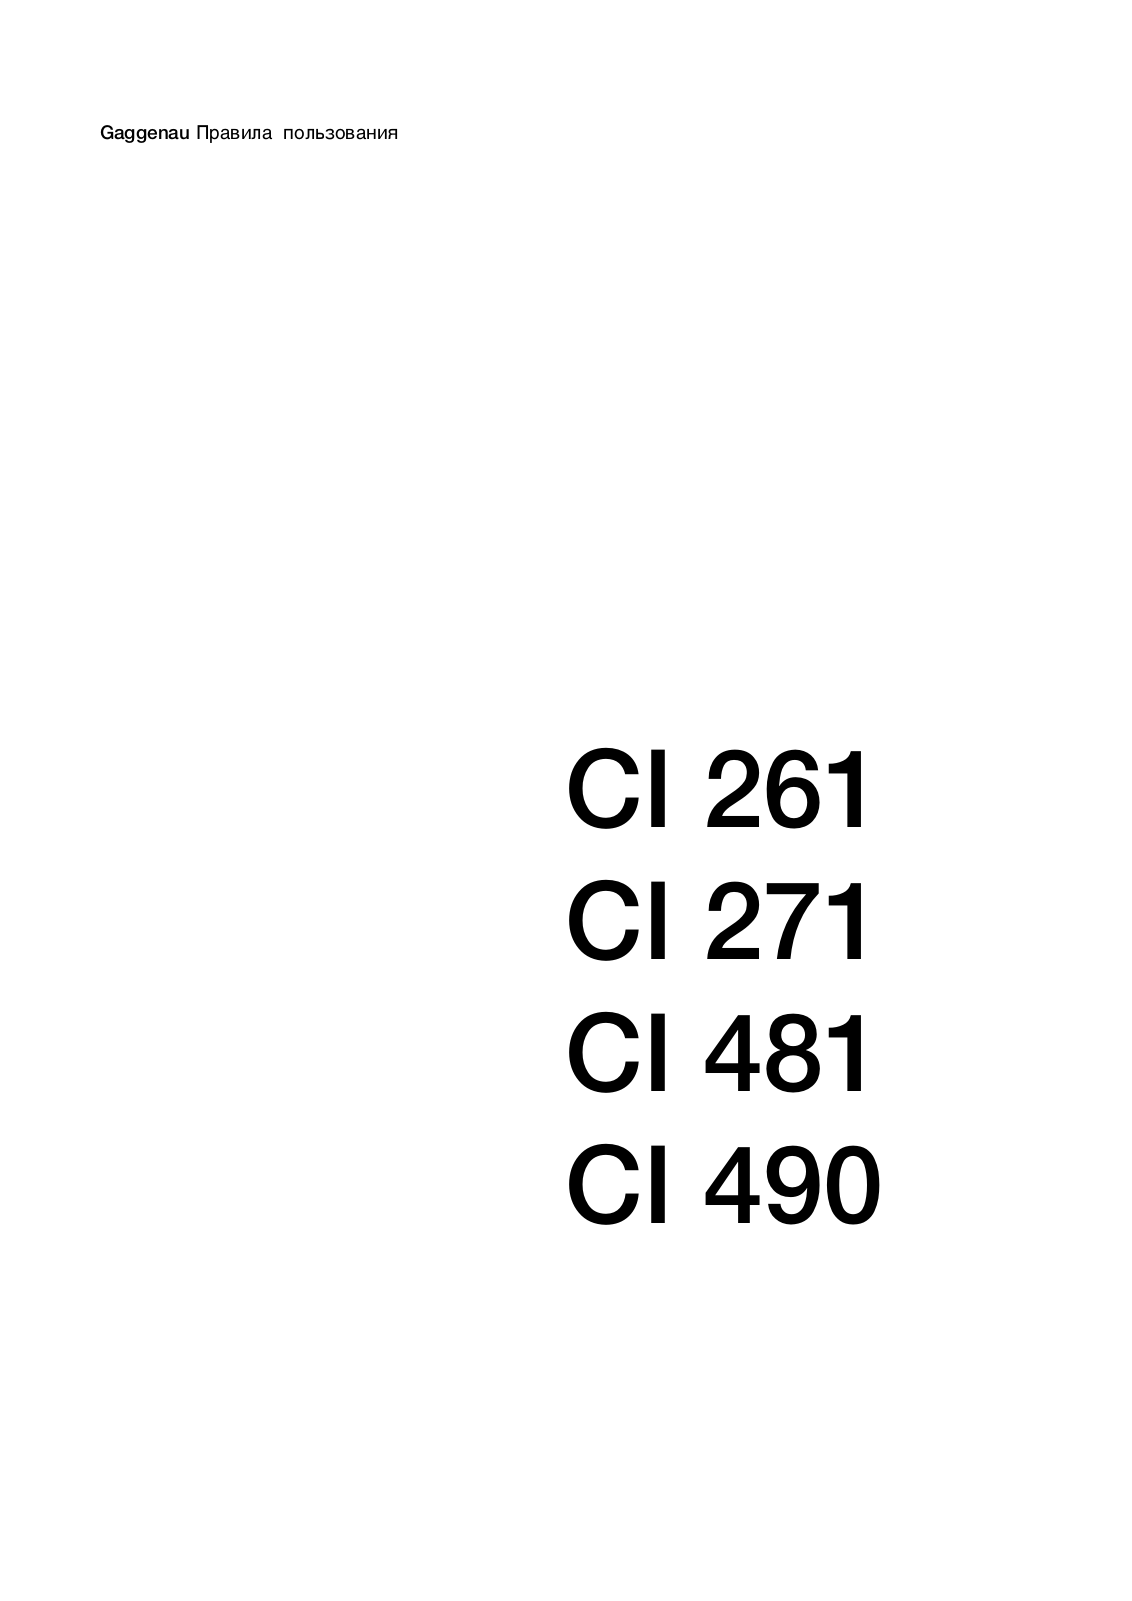 Gaggenau CI 261-112, CI 481-102 User Manual